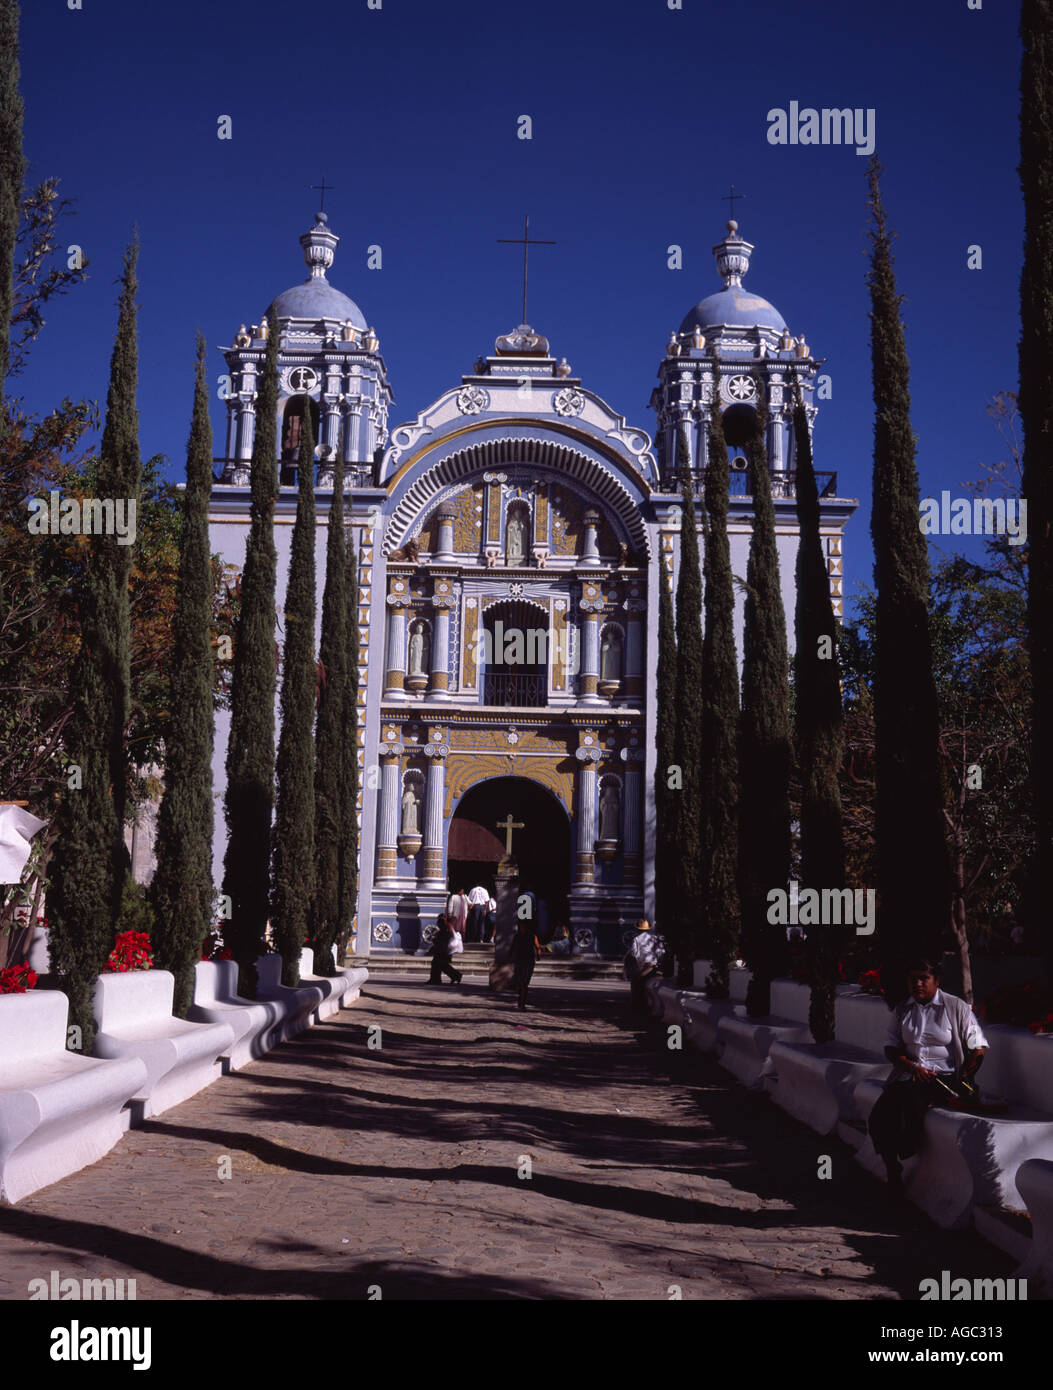 The Atrium and facade of the Temple of Santo Domingo de Guzmán Ocotlán de Morelos, Oaxaca Mexico Stock Photo